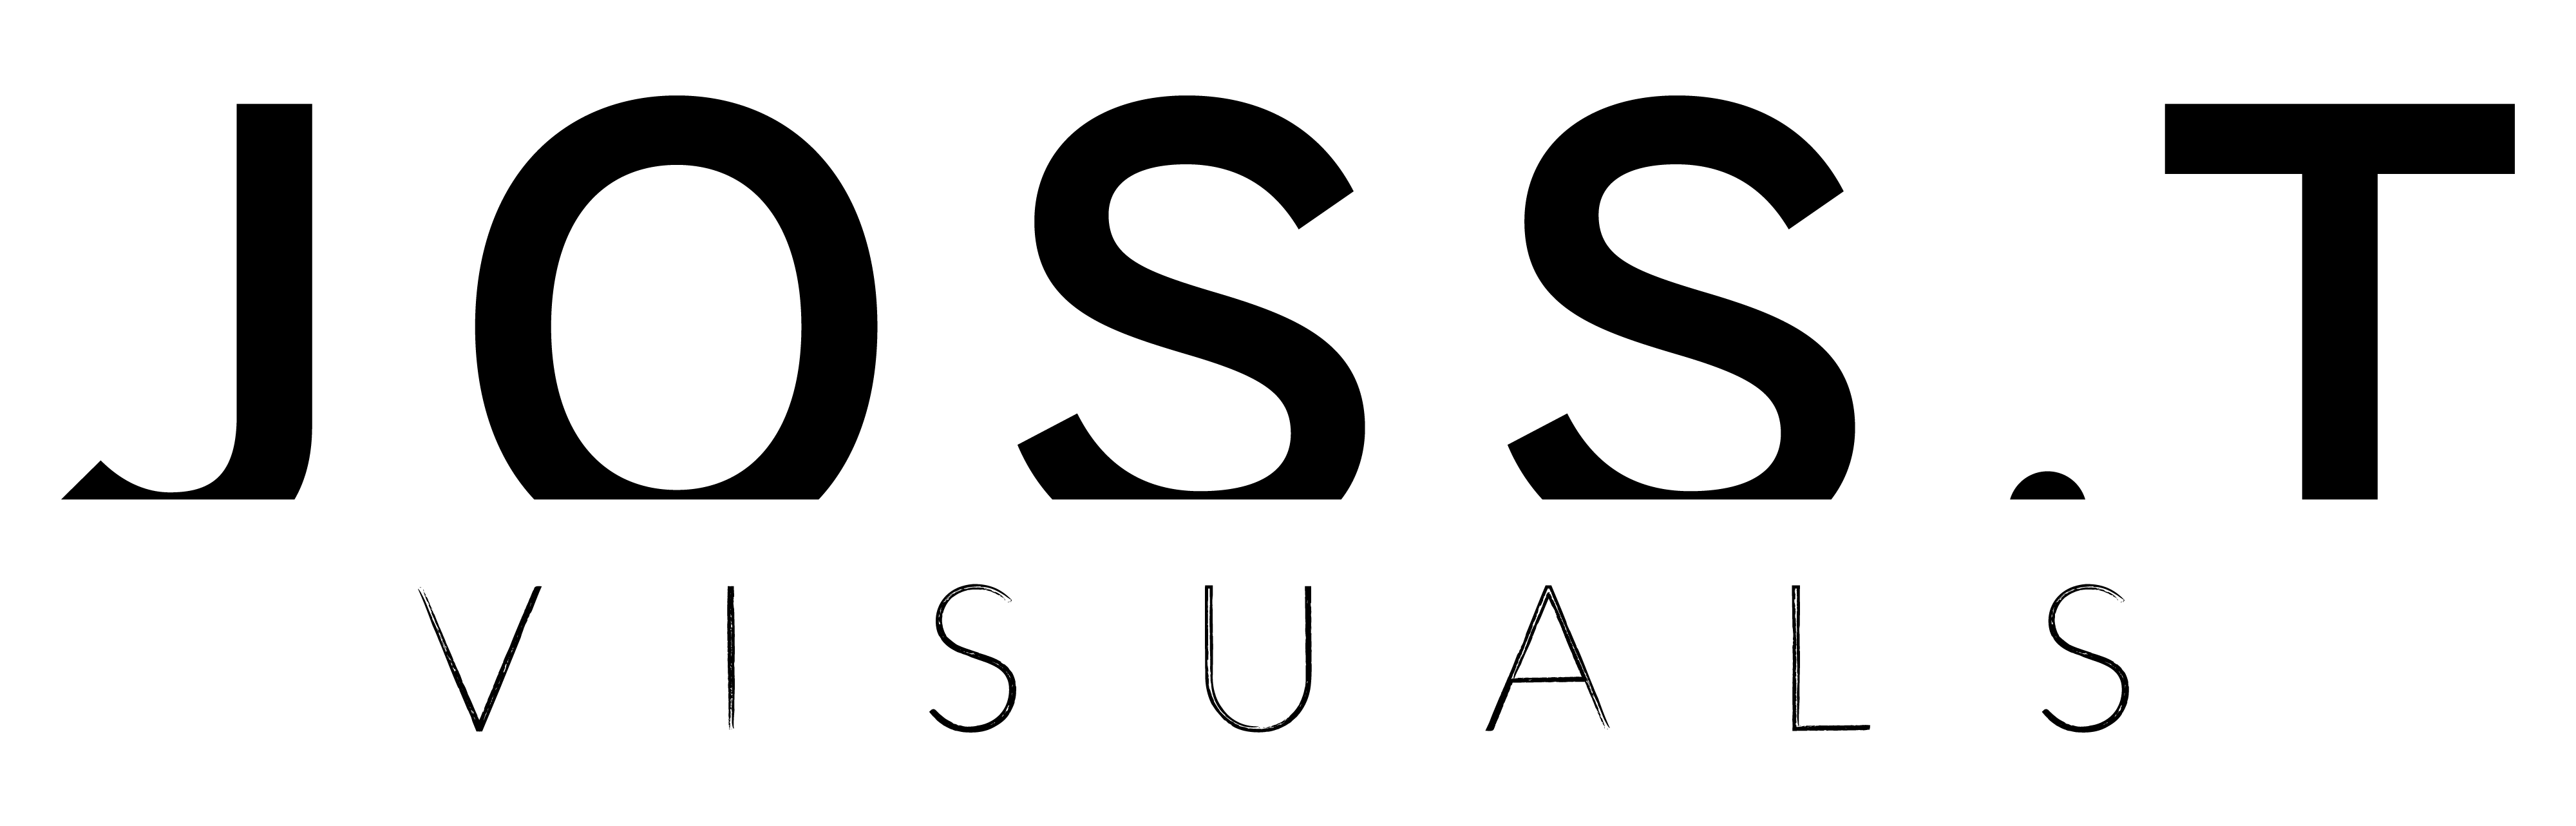 JossT Visuals, logo membre Bel Air Camp